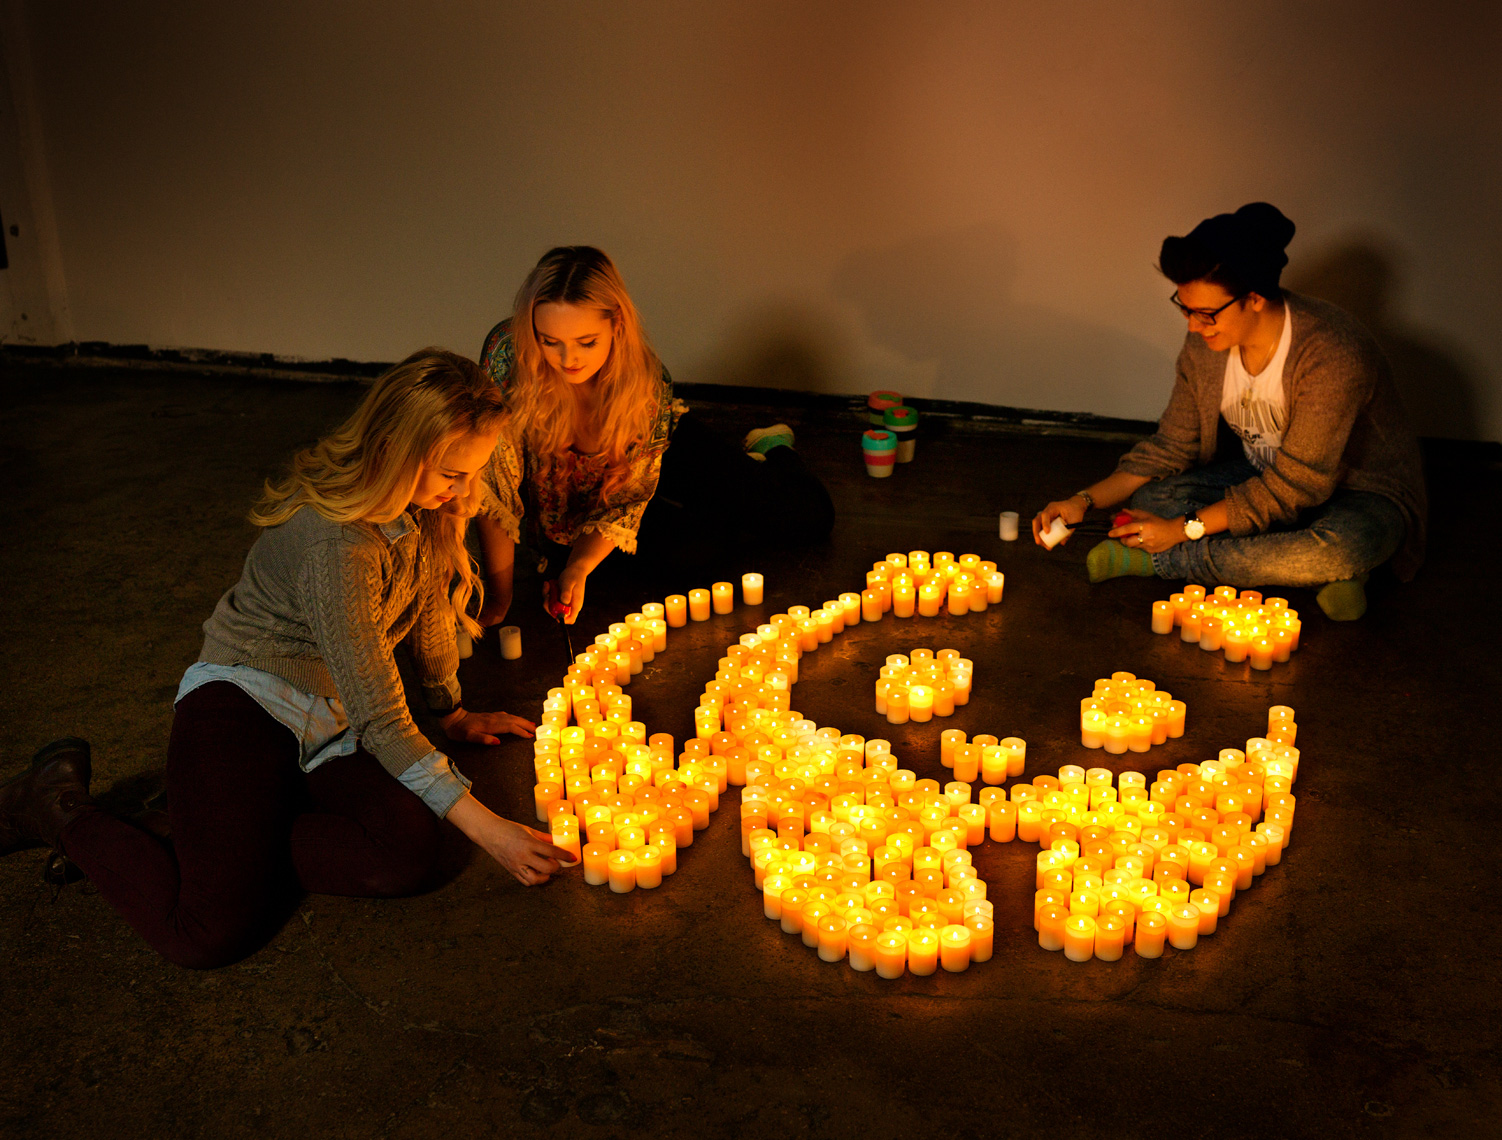 Earth Hour Campaign Photos for WWF Finland // Photographer: Aki-Pekka Sinikoski